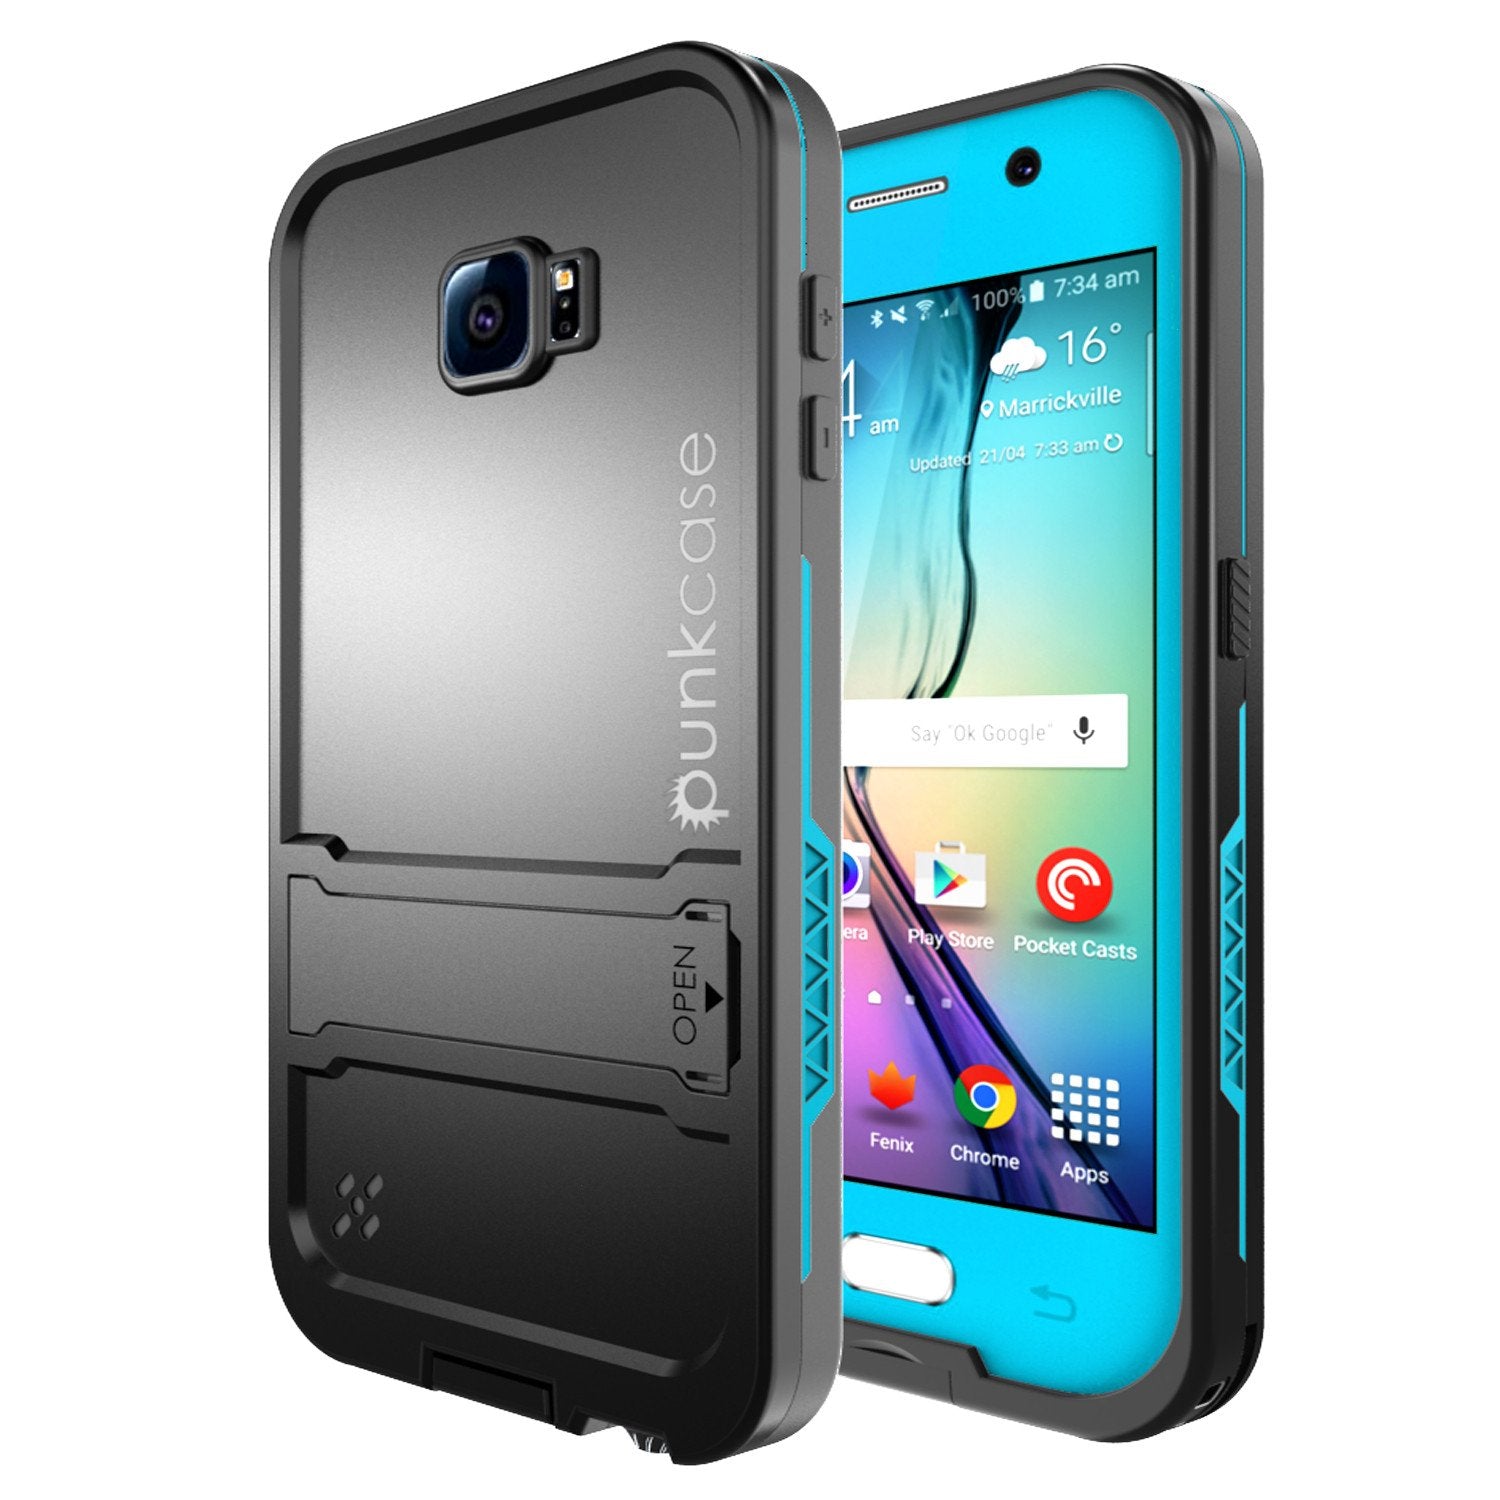 Galaxy S6 Waterproof Case, Punkcase SpikeStar Light Blue Water/Shock/Dirt Proof | Lifetime Warranty